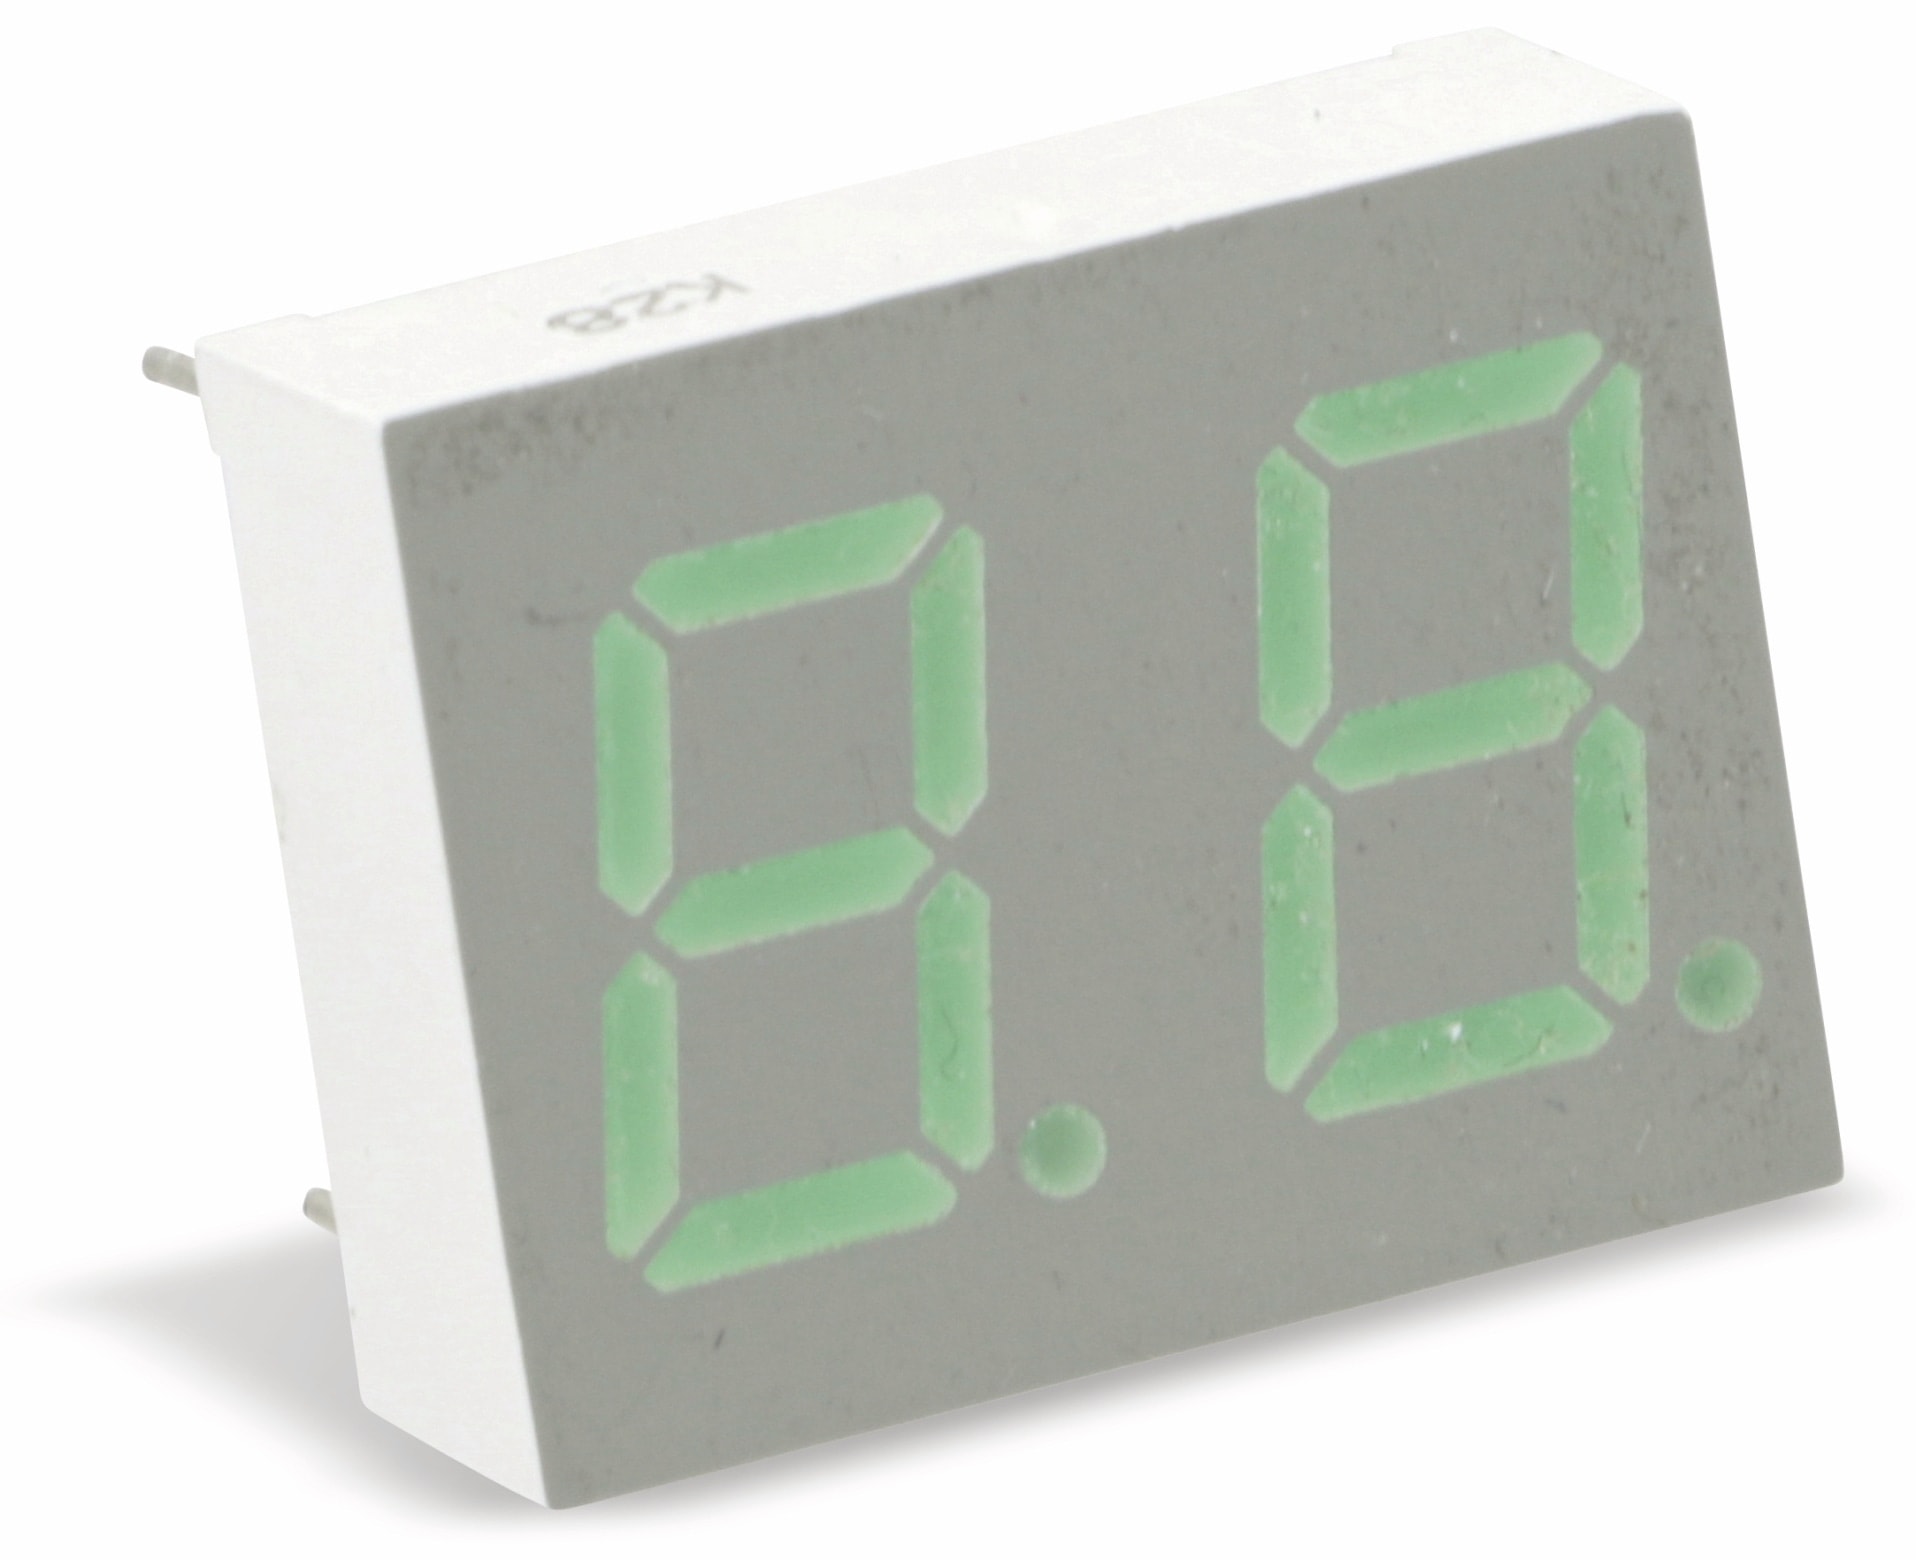 LiteOn LED-Anzeige LTD-482G, 2-stellig, grün